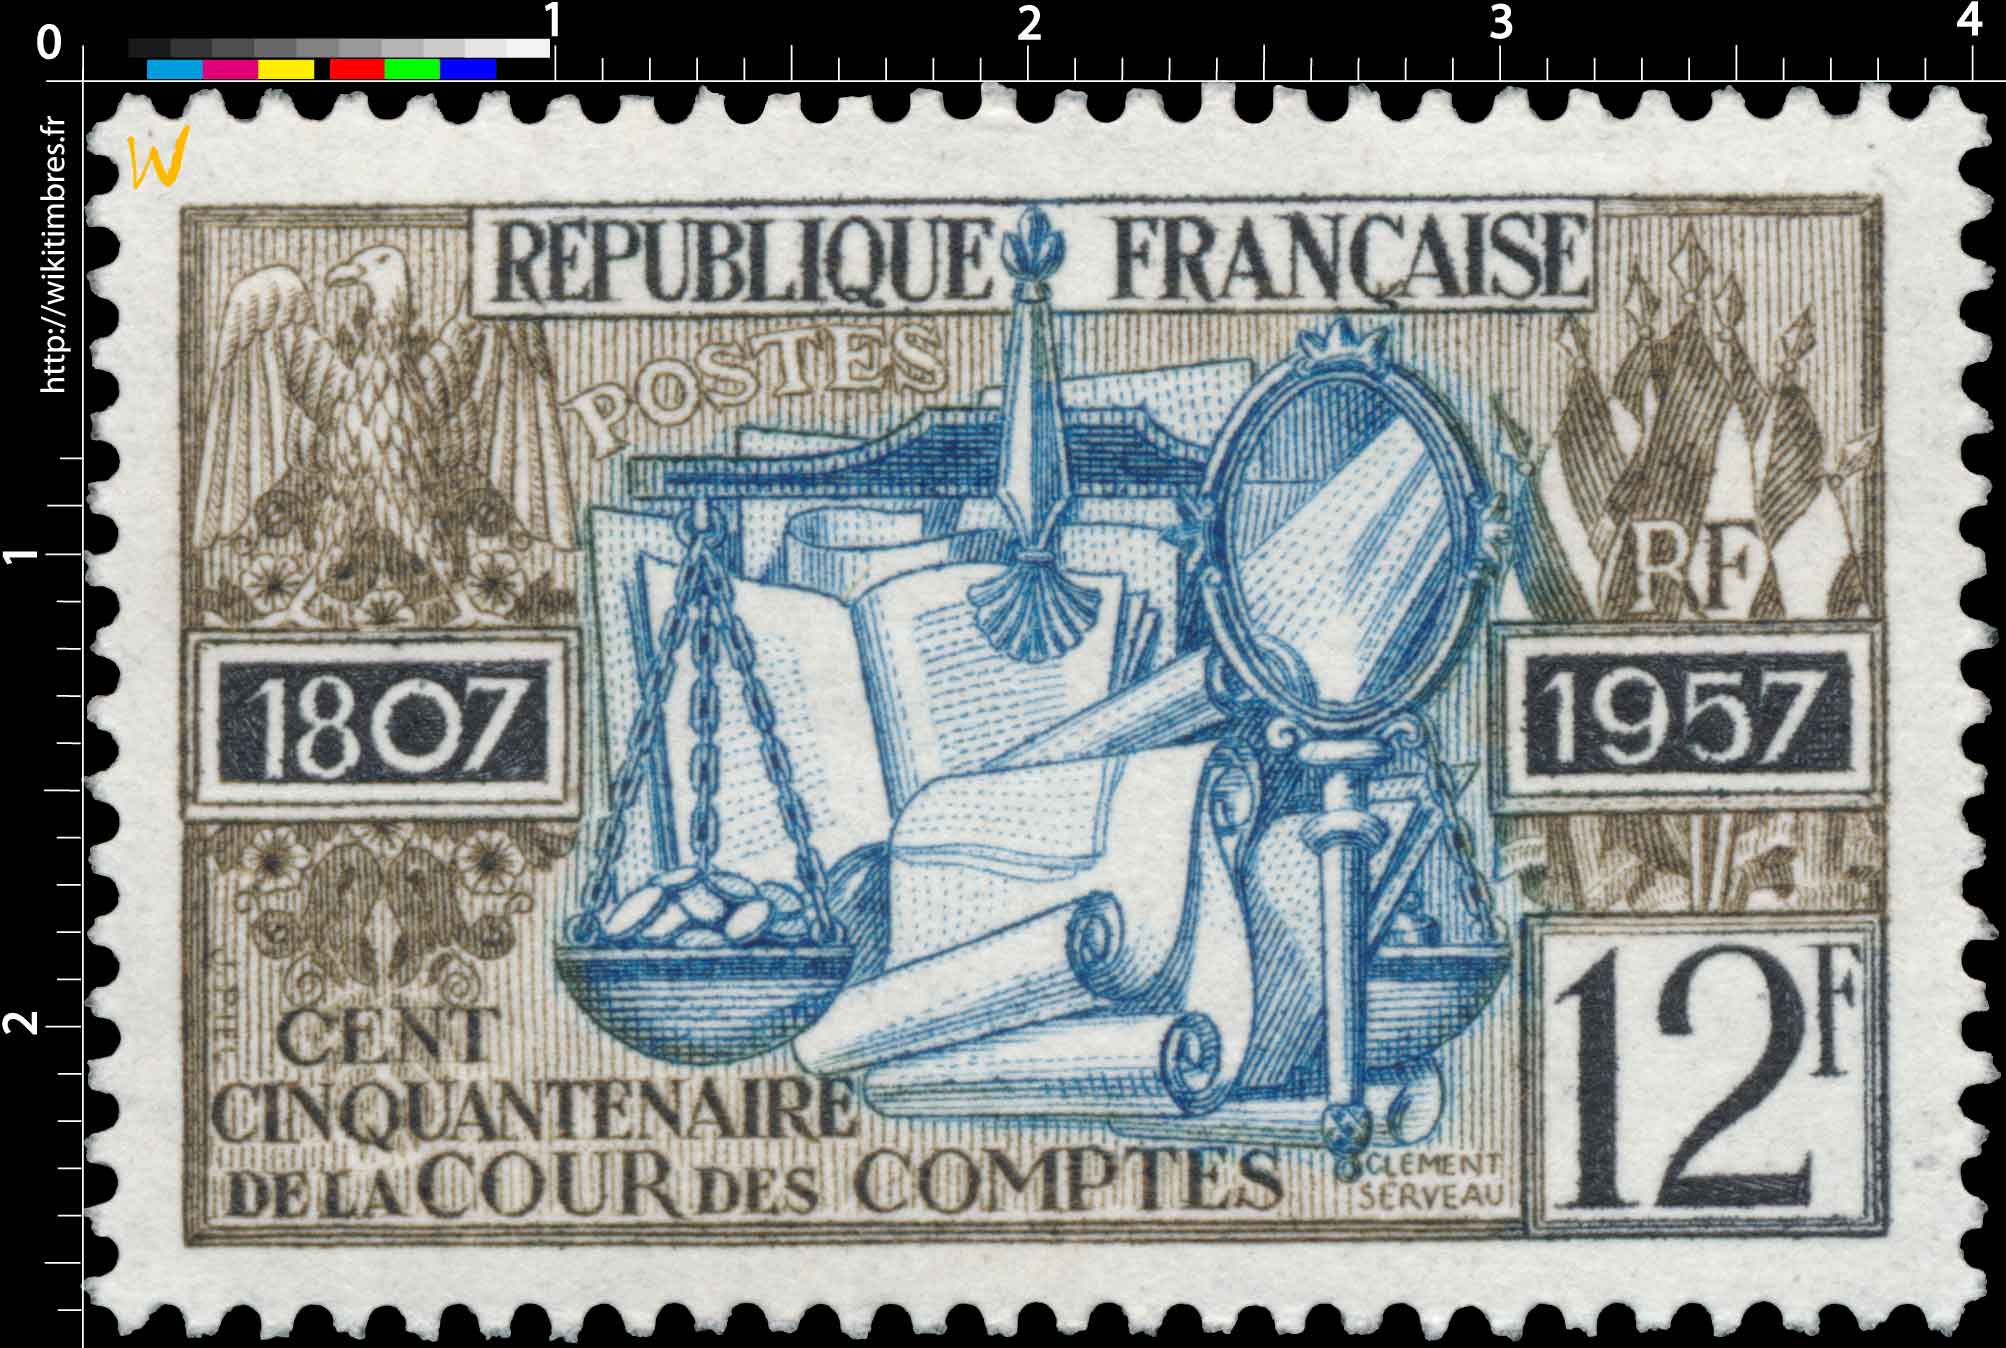 CENT CINQUANTENAIRE DE LA COUR DES COMPTES 1957